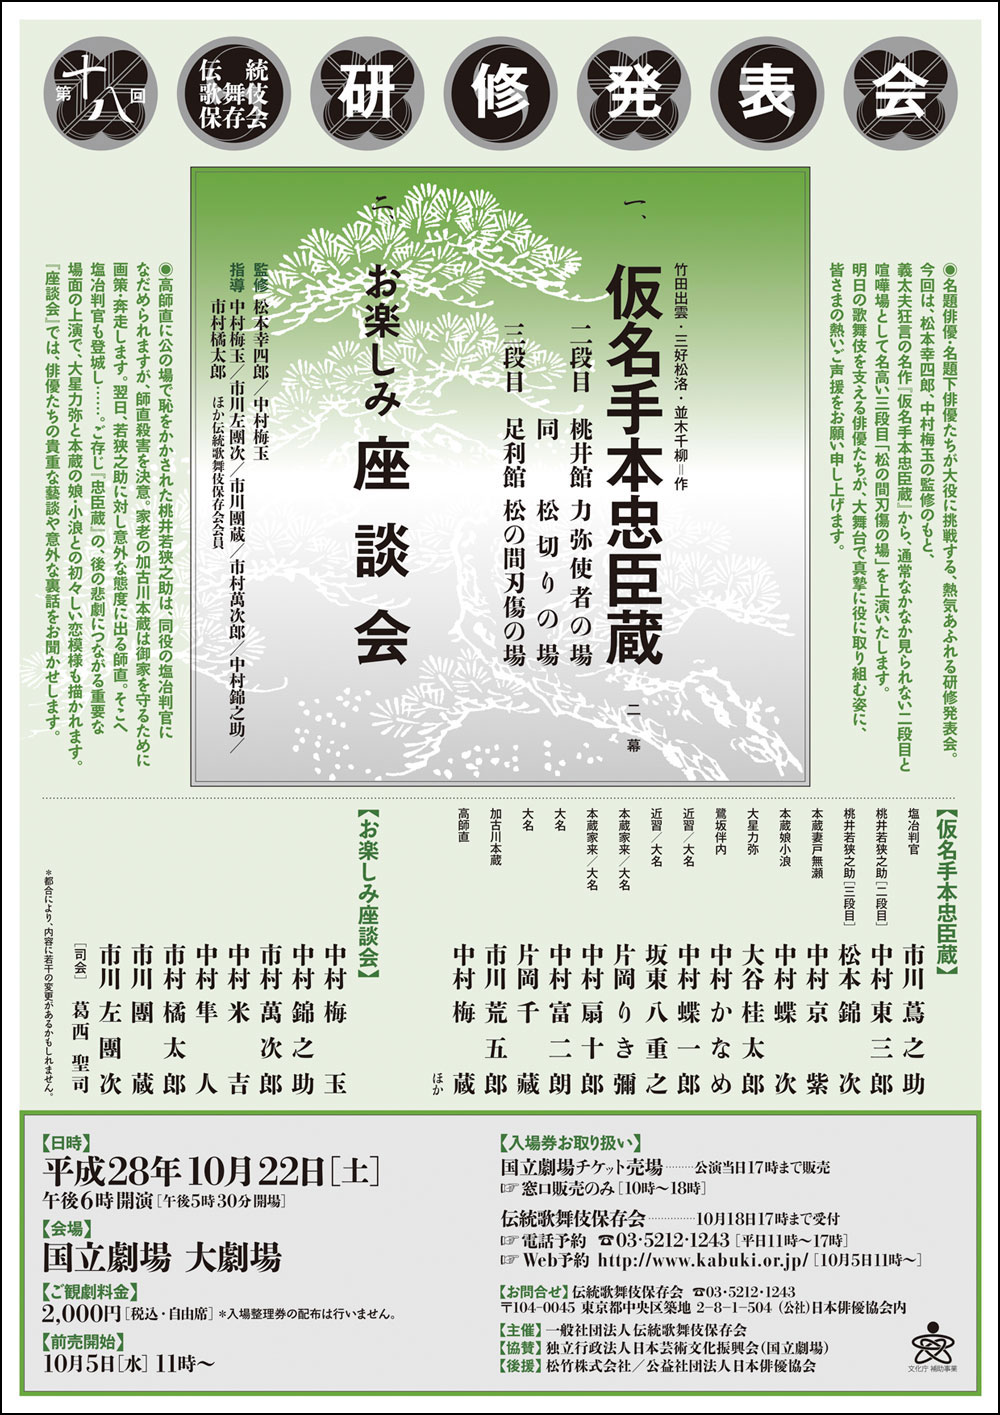 「第十八回伝統歌舞伎保存会研修発表会」のお知らせ